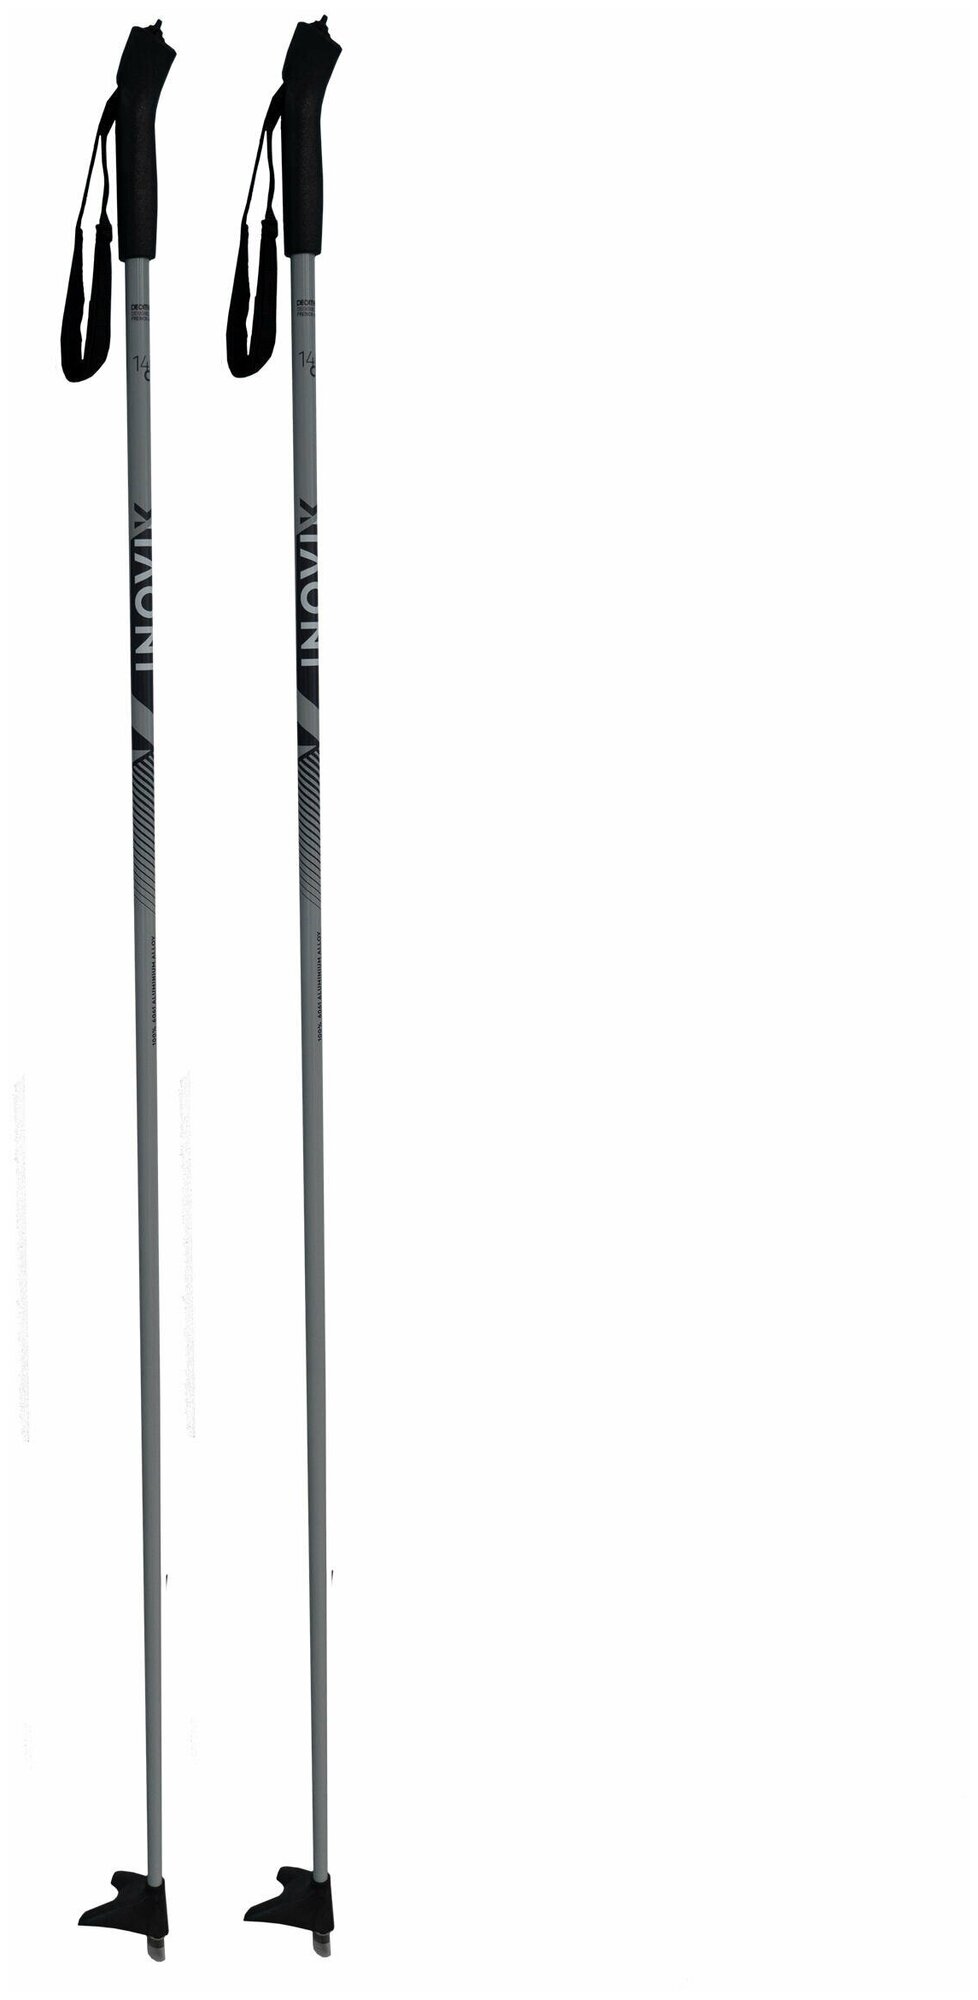 Палки для беговых ЛЫЖ XC S POLE 110_JR RU Наши разработчики создали эти палки для нерегулярного катания на беговых лыжах со средней интенсивностью нагрузки. 105 см для мальчиков/для девочек Стержень: 100.0% Алюминий 6061